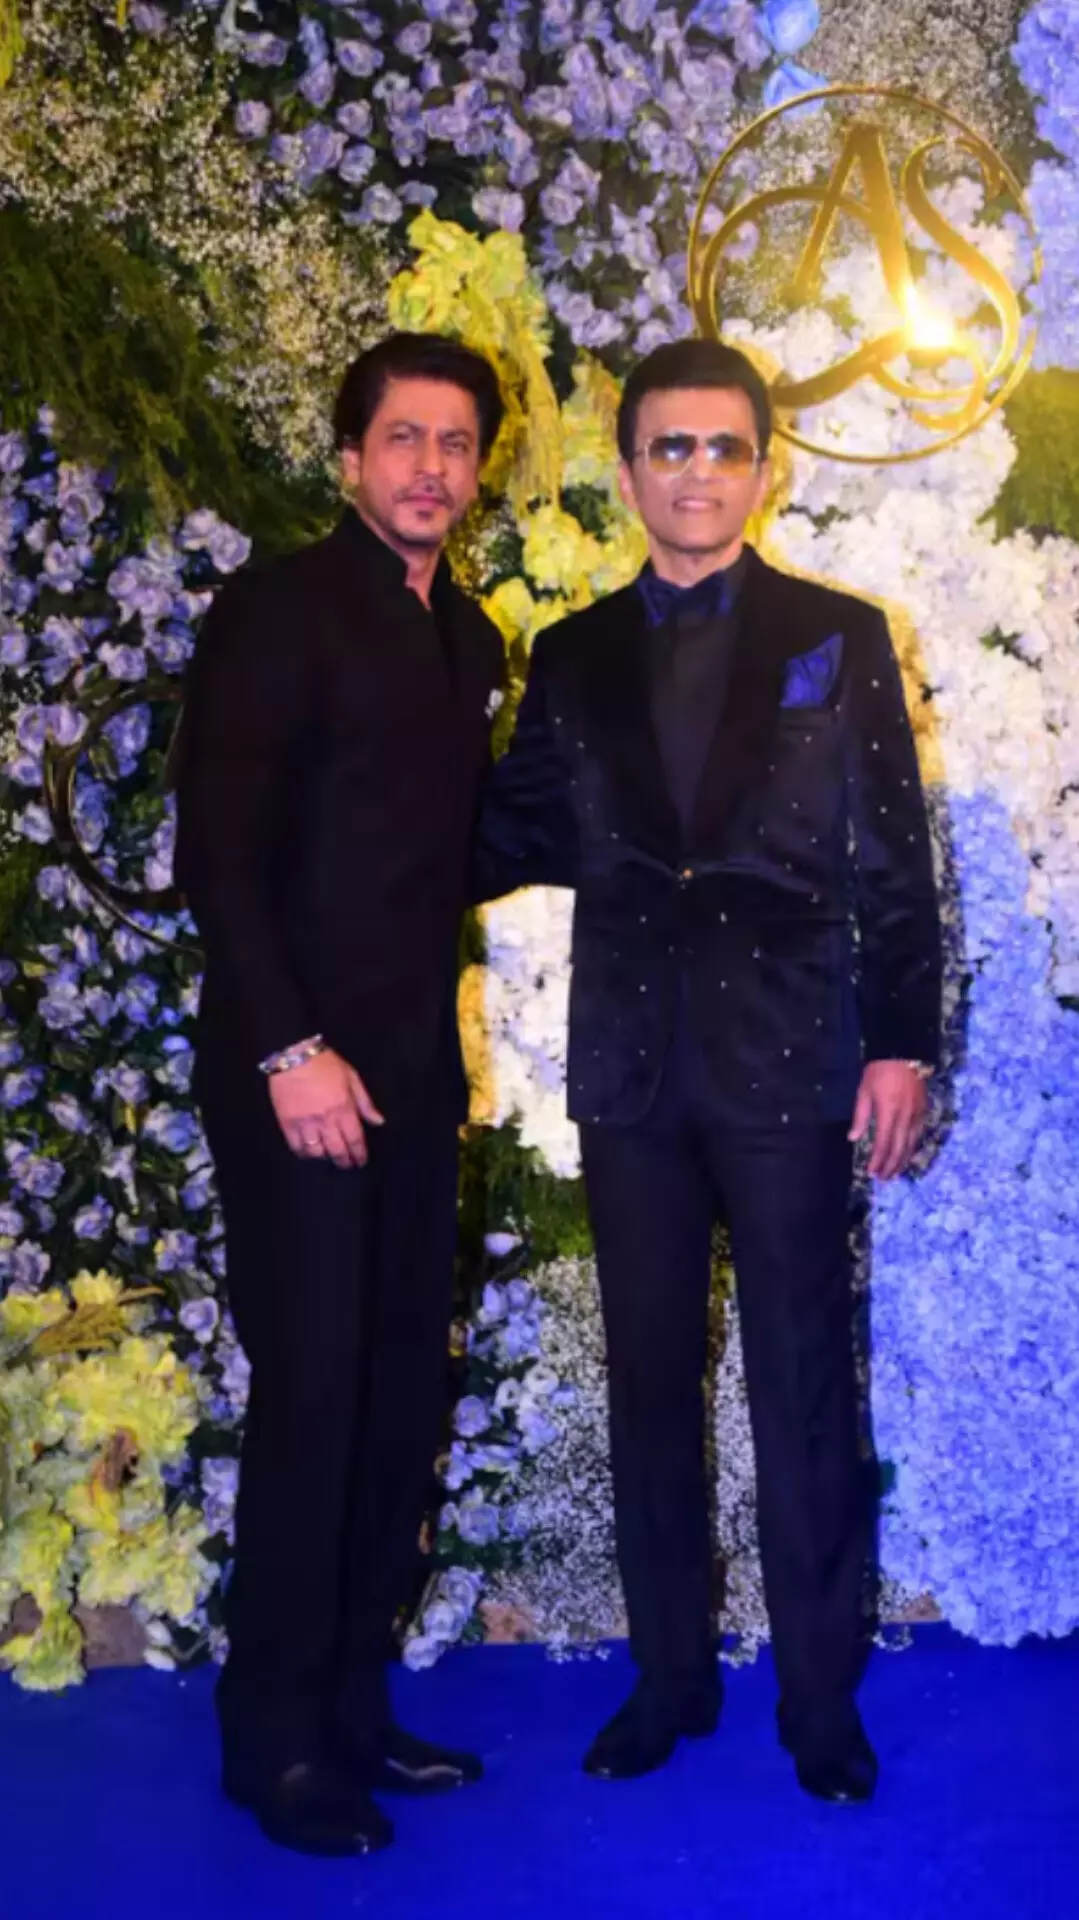 आनंद पंडित की बेटी की शादी में बॉलीवुड सितारों का जमावड़ा, शाहरुख खान ने मारी धांसू एंट्री